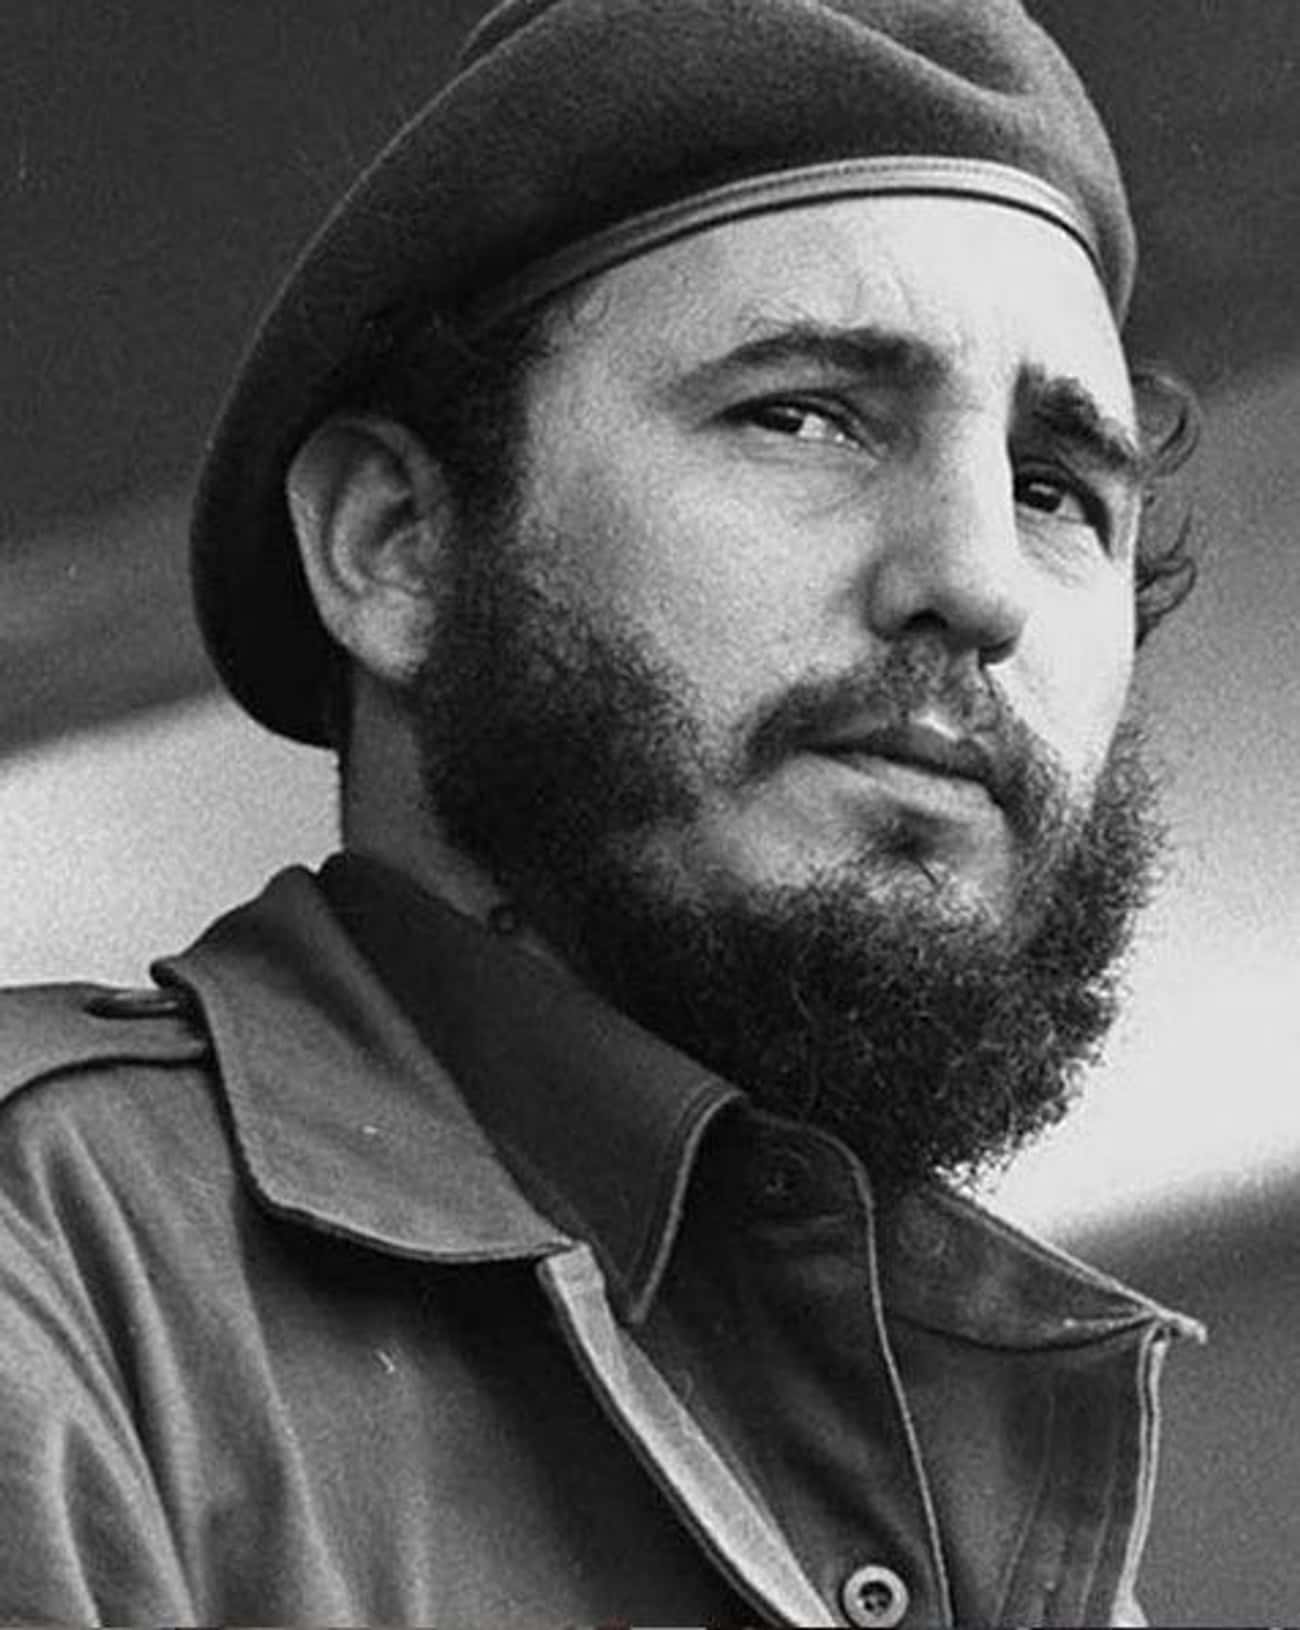 Fidel Castro - 35,000